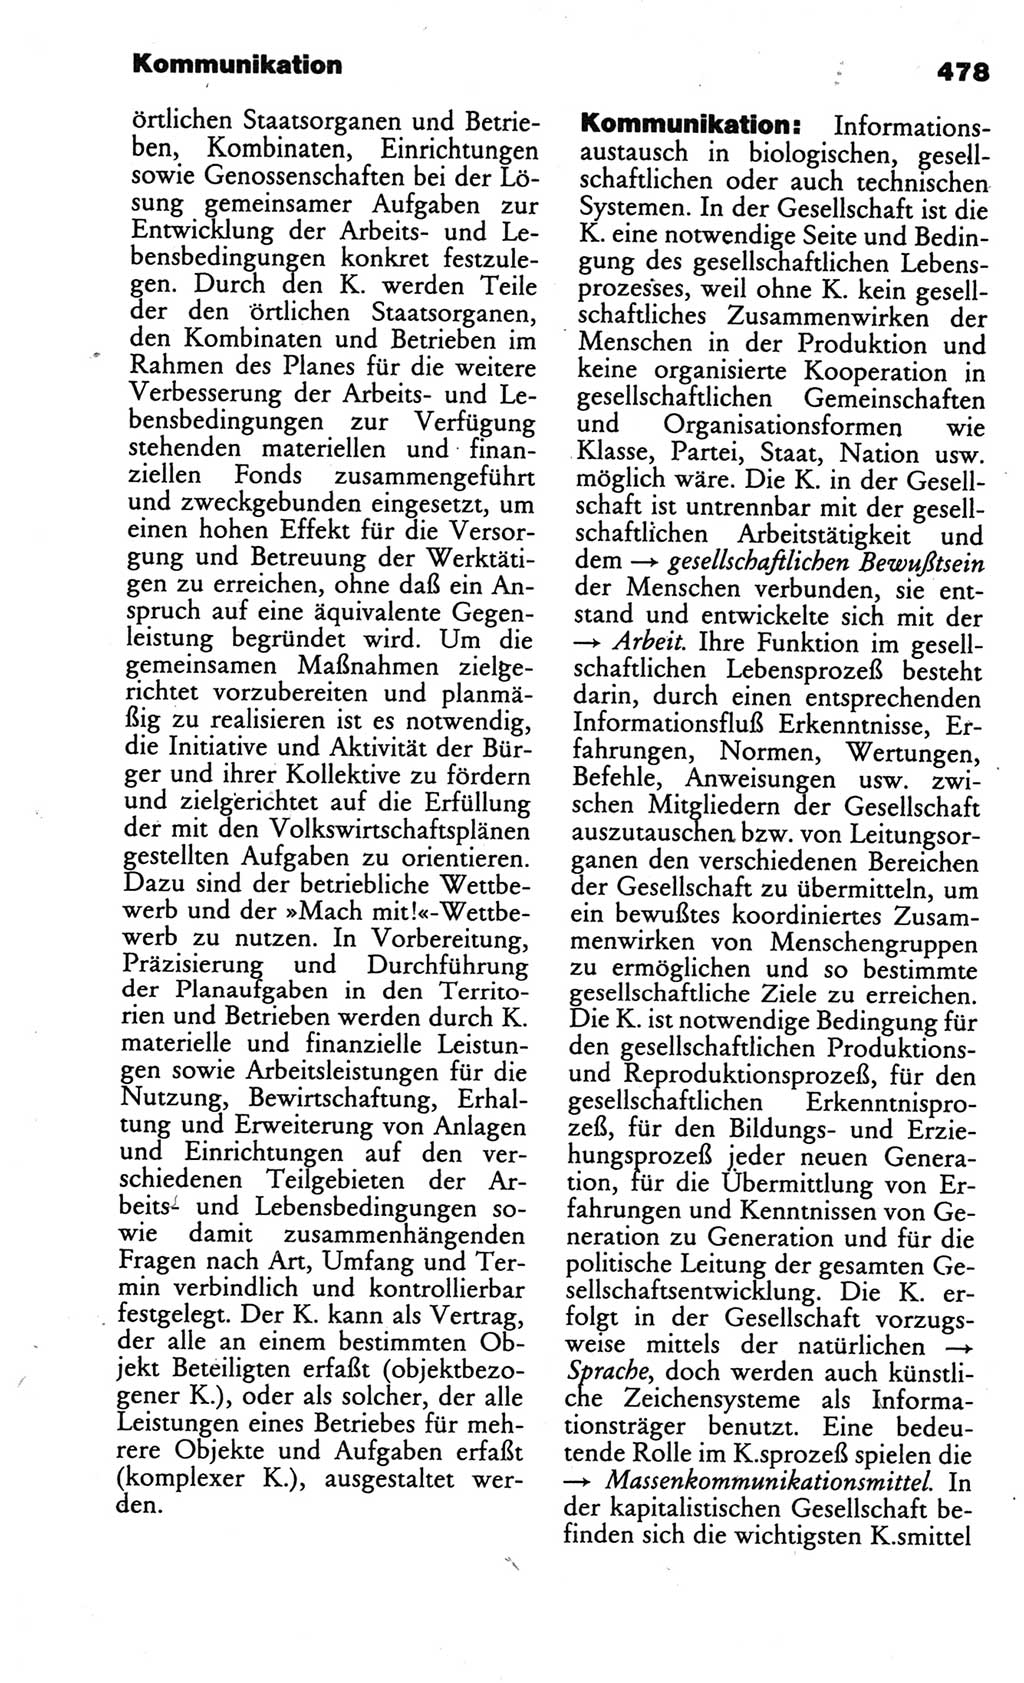 Kleines politisches Wörterbuch [Deutsche Demokratische Republik (DDR)] 1986, Seite 478 (Kl. pol. Wb. DDR 1986, S. 478)